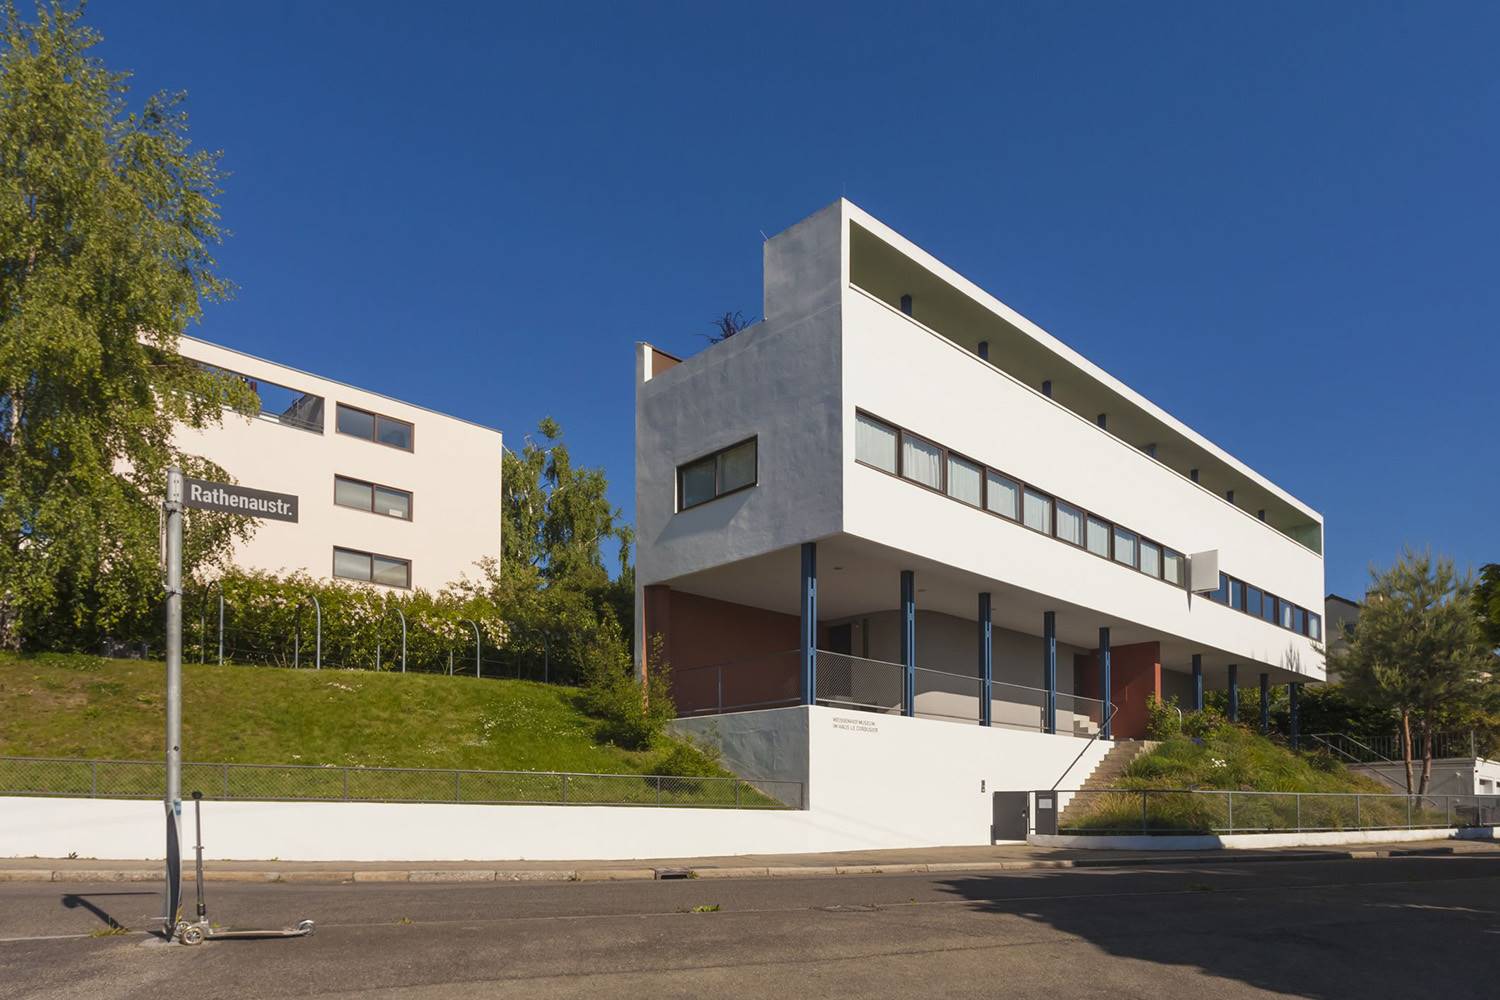 Casa doble en la Weissenhofsiedlung, Stuttgart, Le Corbusier (1927)